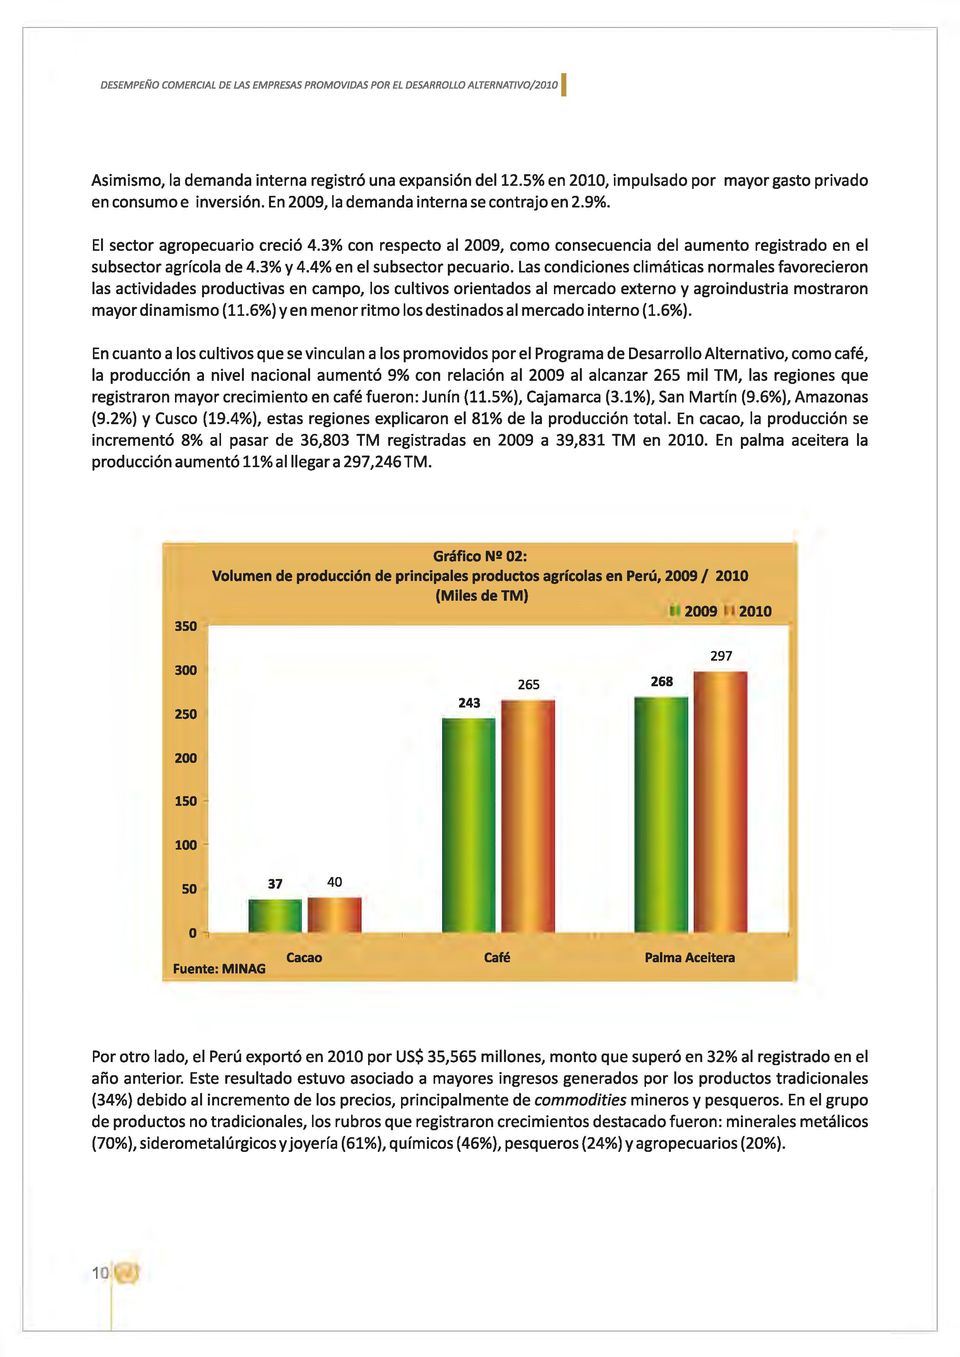 3% con respecto al 2009, como consecuencia del aumento registrado en el subsector agrícola de 4.3% y 4.4% en el subsector pecuario.